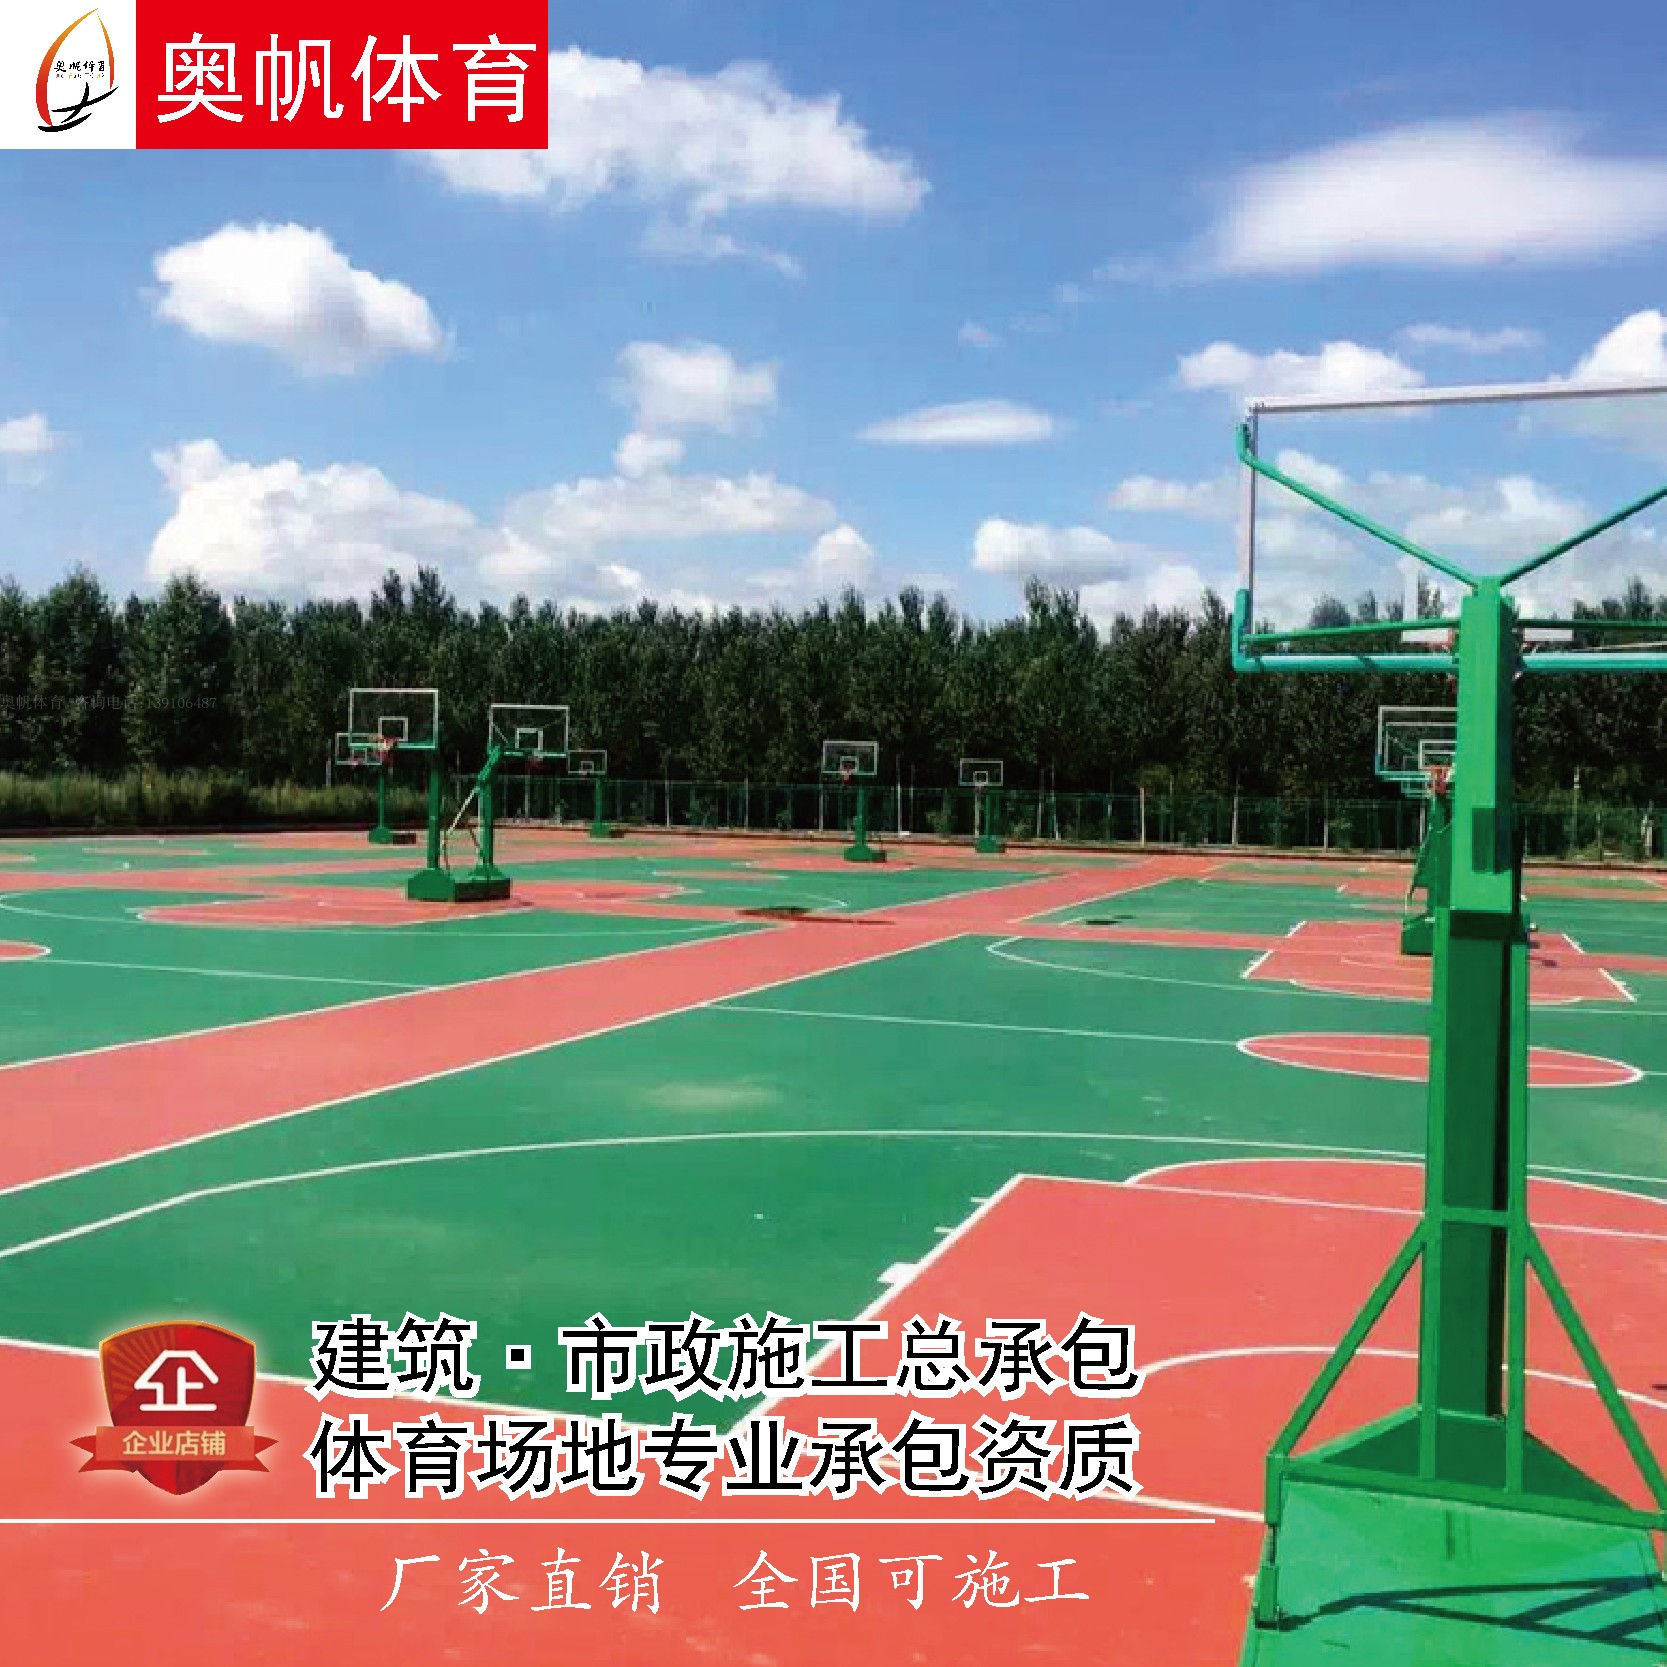 籃球場施工塑膠球場環保材料硅PU地膠丙烯酸橡膠地墊廠家全國直銷